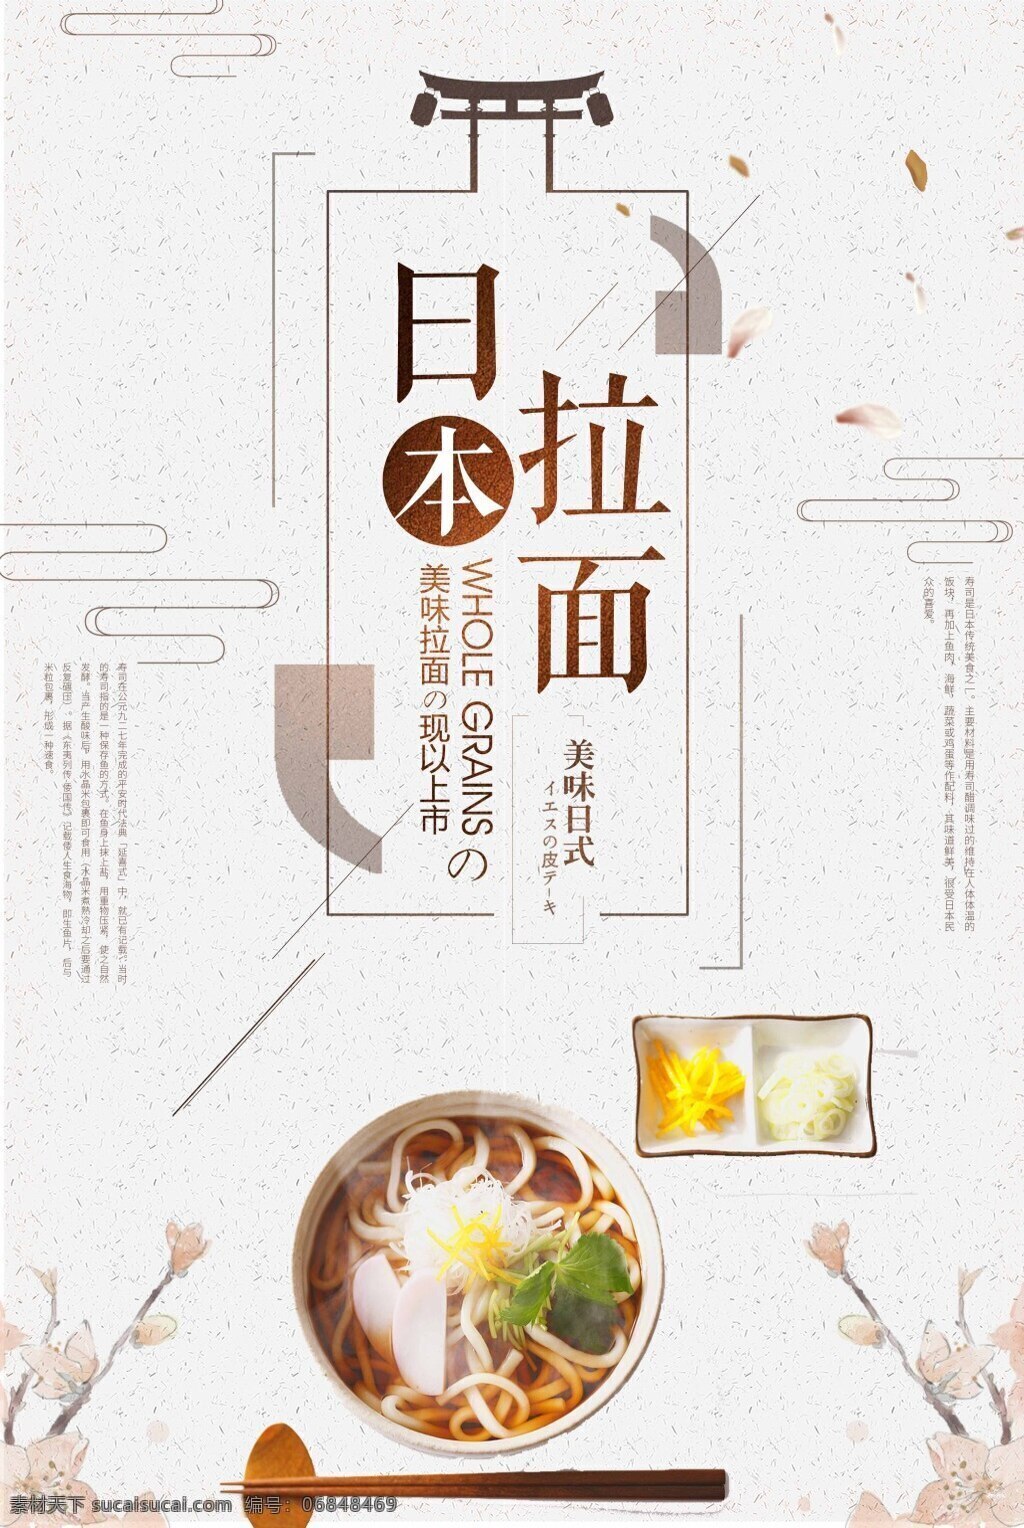 简洁 日本 美食 拉面 海报 设计海报 日本美食 日本美食海报 美食海报 海报美食 拉面海报 海报拉面 日本海报